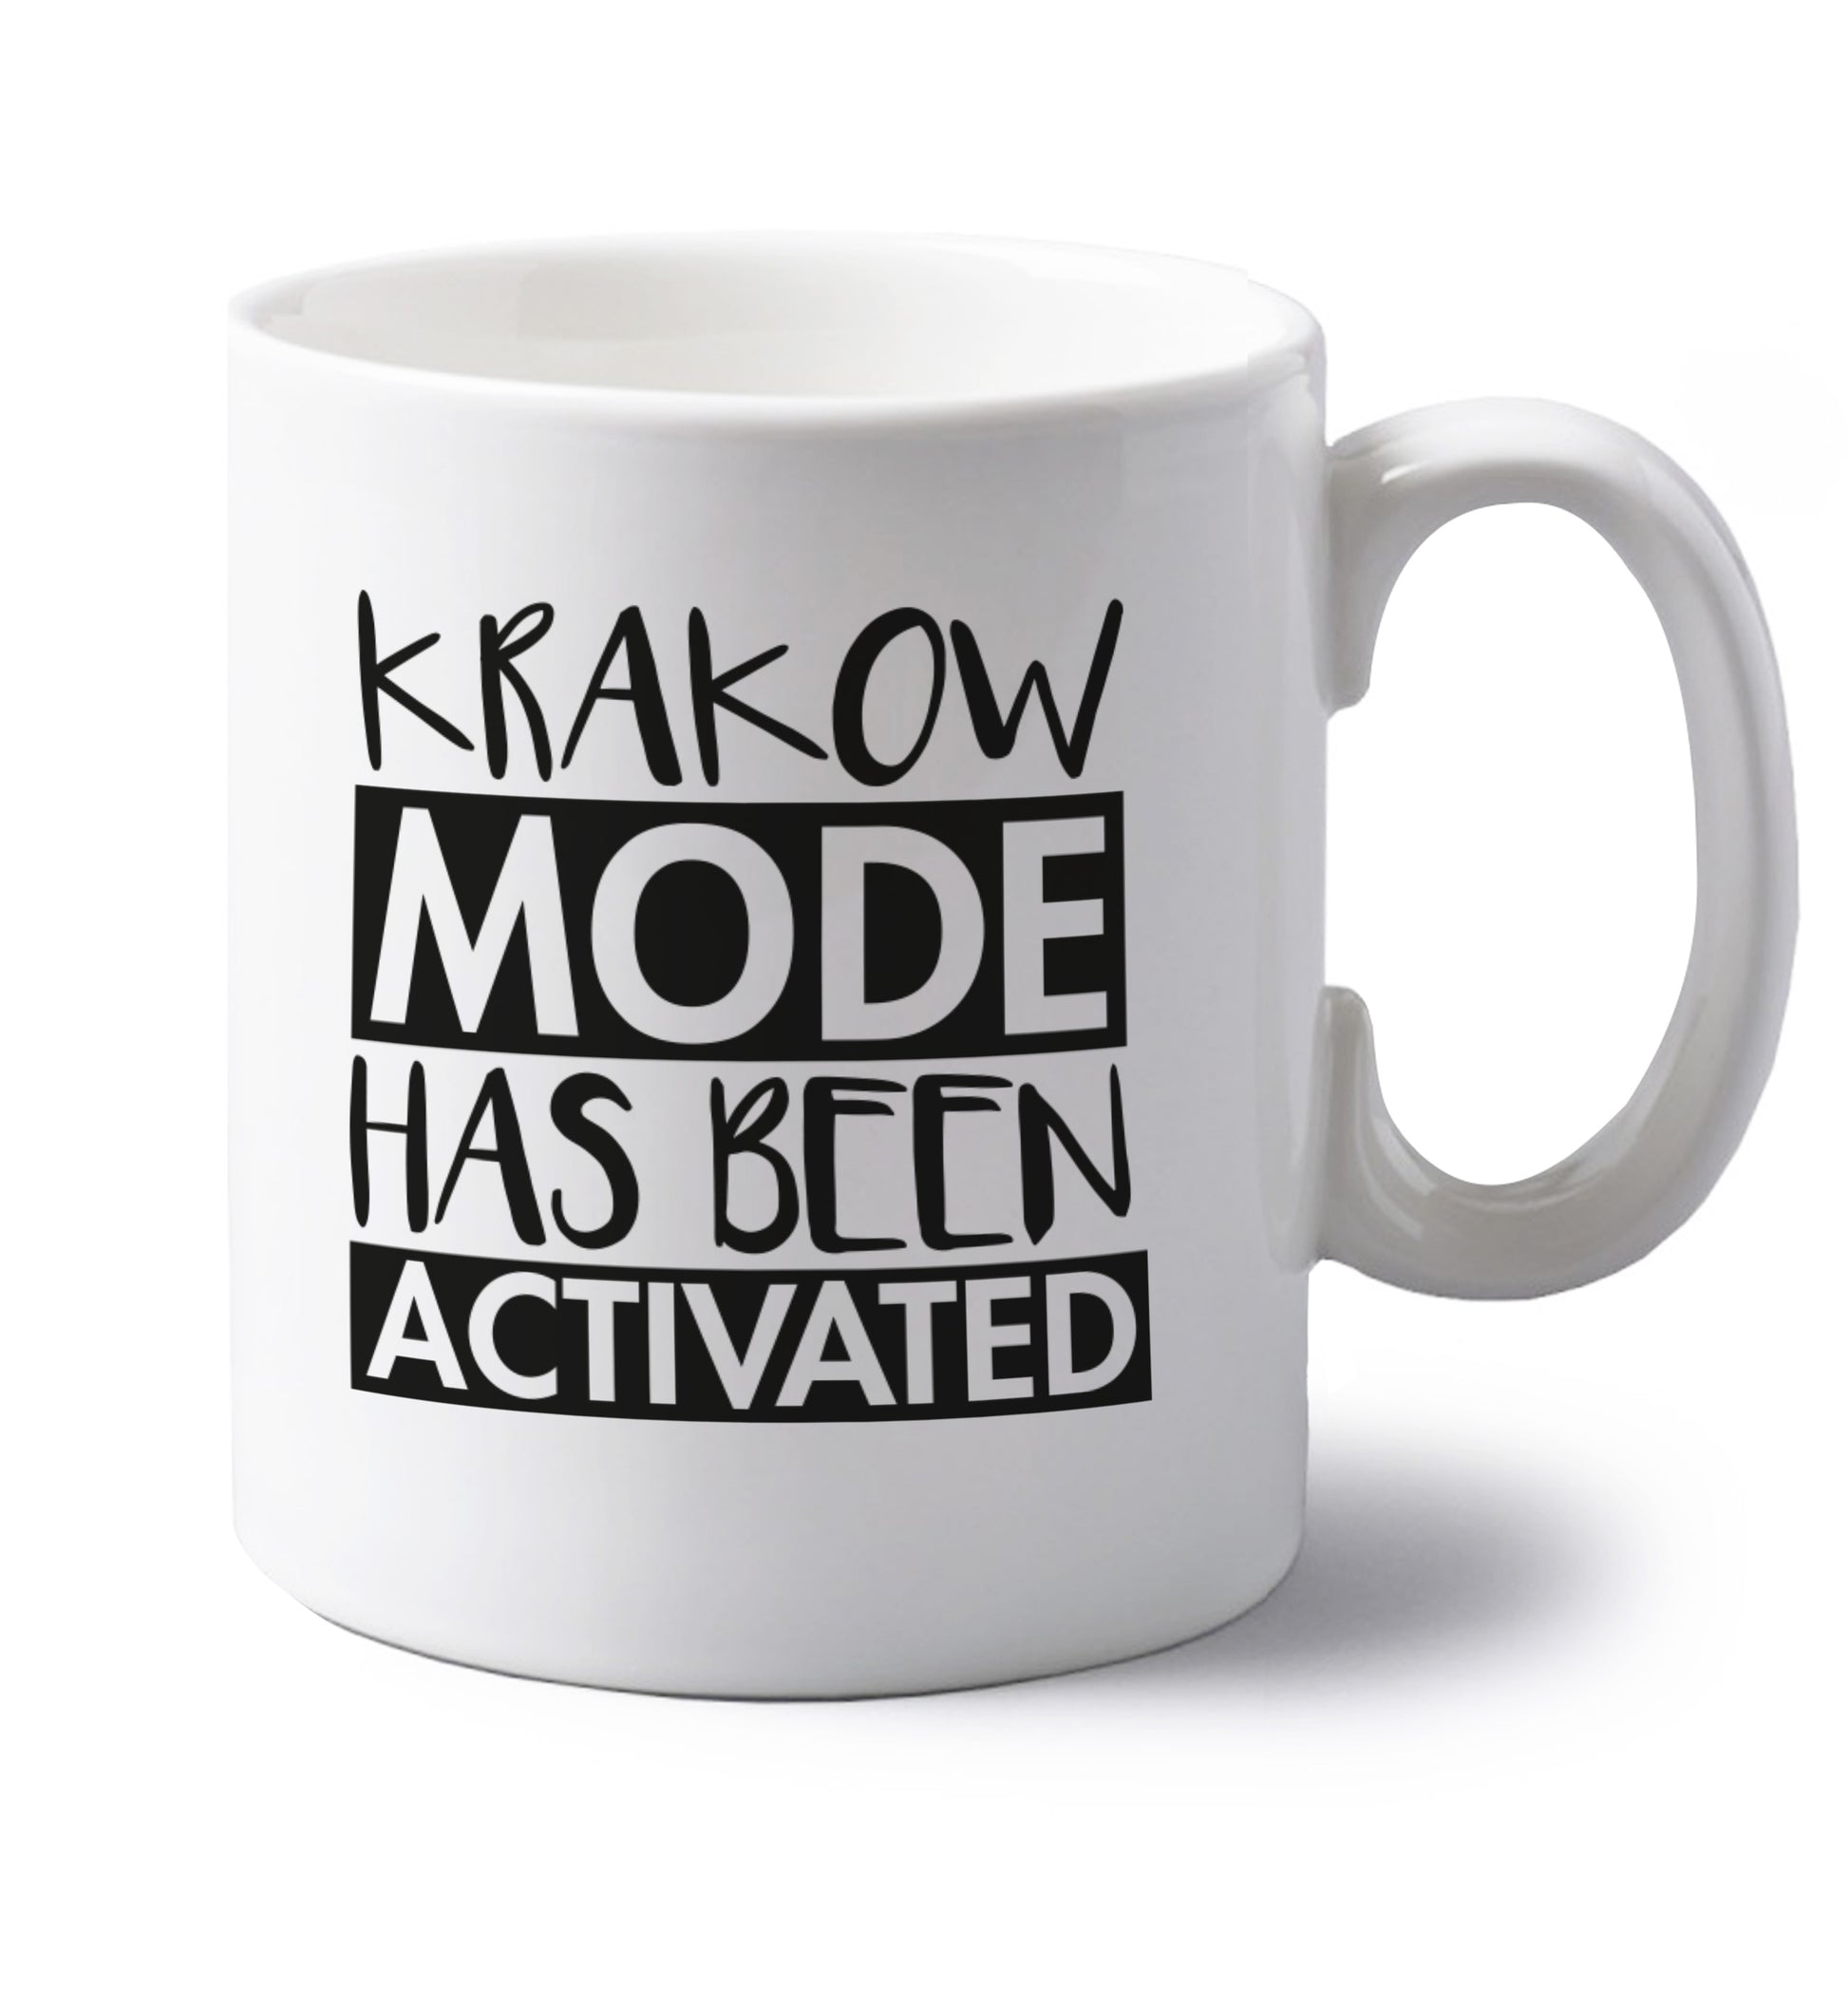 Krakow mode has been activated left handed white ceramic mug 